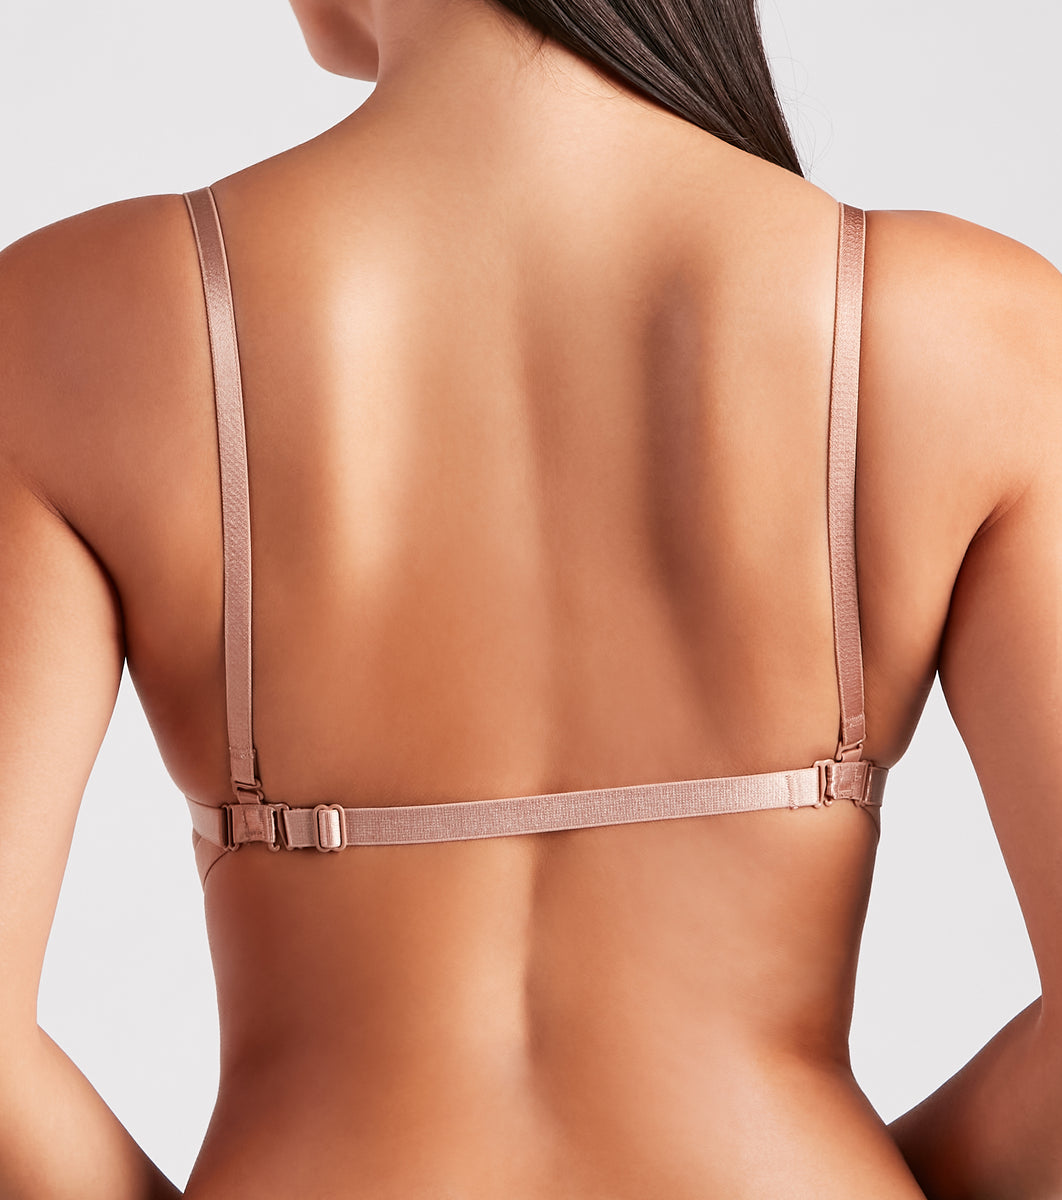 Low Back Bra Straps Fashion Bra Belt For Dresses Fully Adjustable